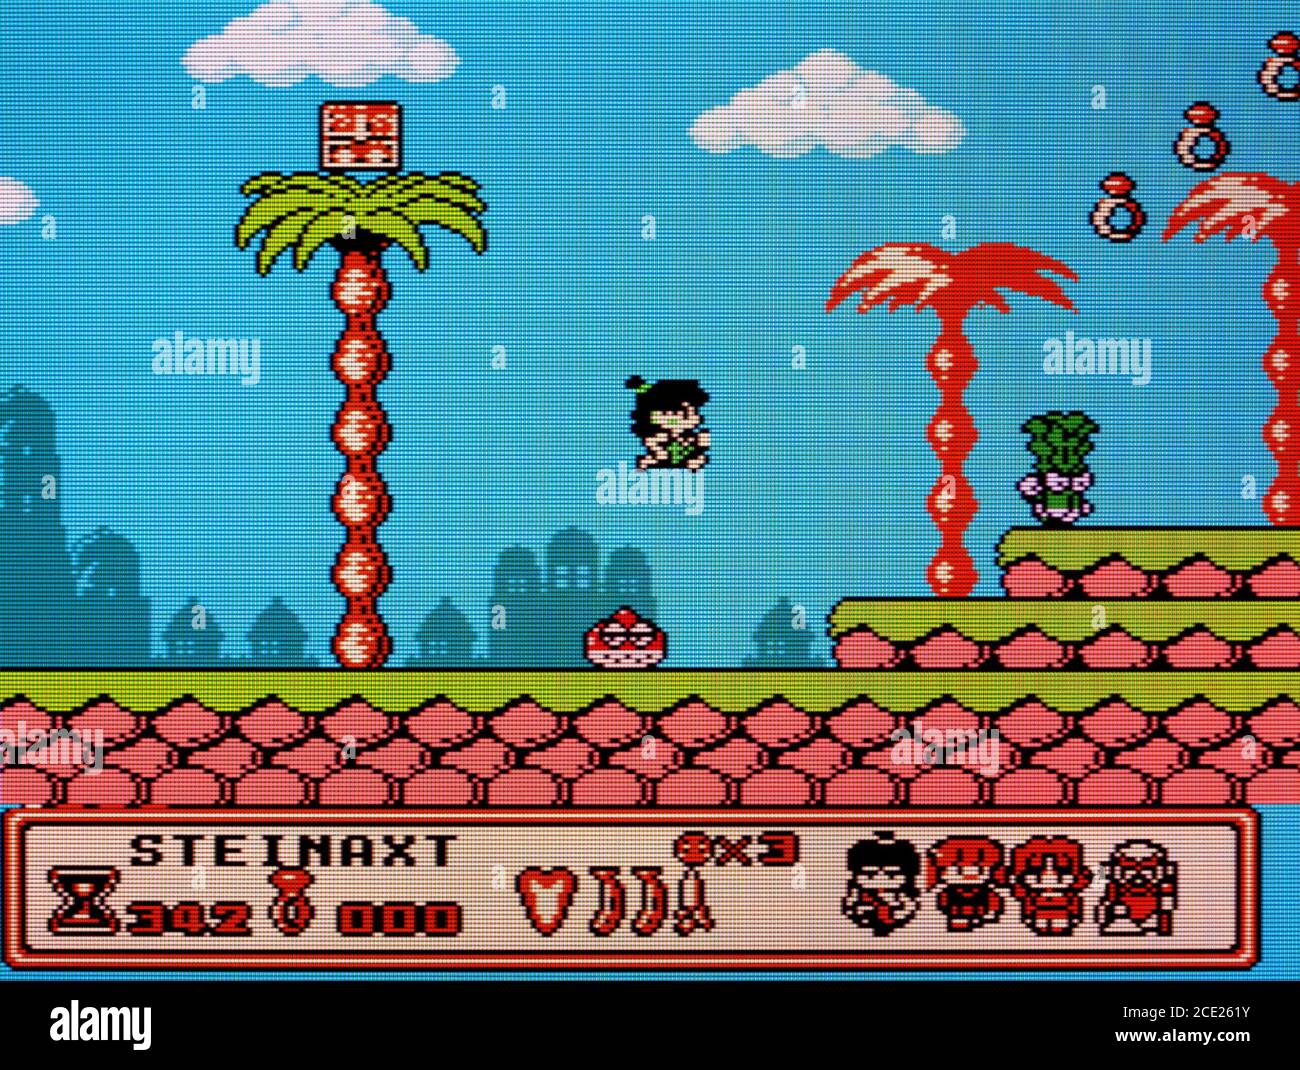 Banan Prince - Nintendo Entertainment System - NES Videogame - Nur für redaktionelle Zwecke Stockfoto